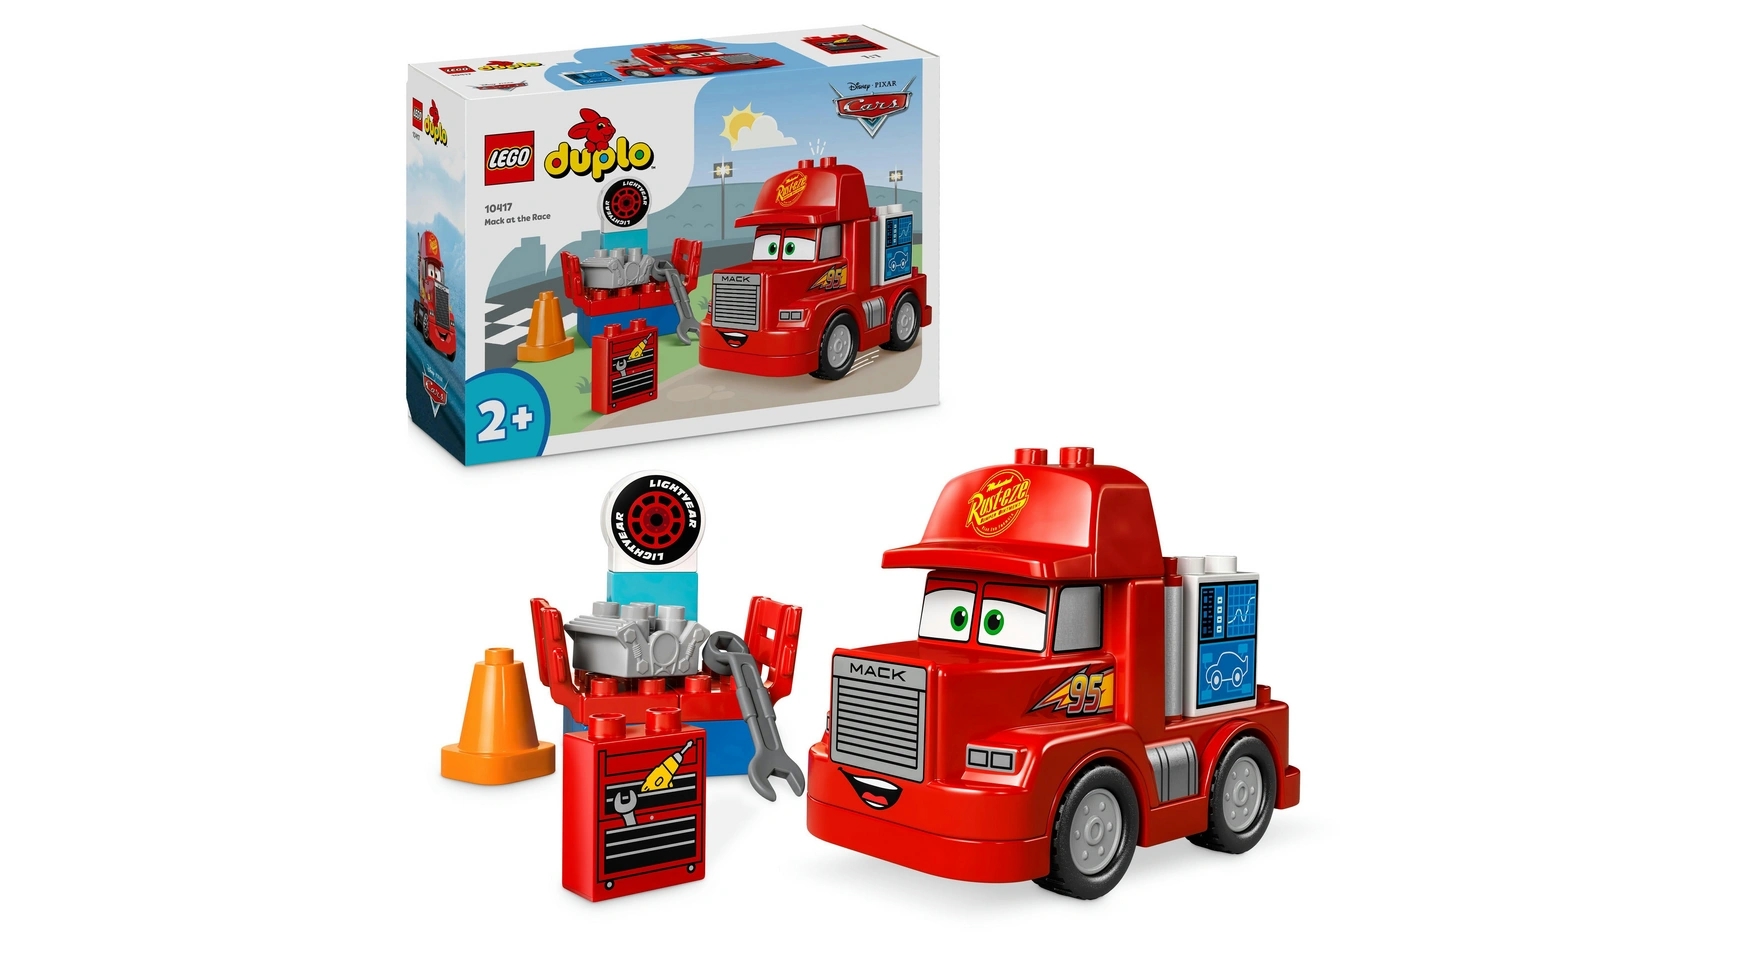 Lego DUPLO Гоночный грузовик Mack от Disney и Pixar Cars 100 наклеек disney pixar тачки